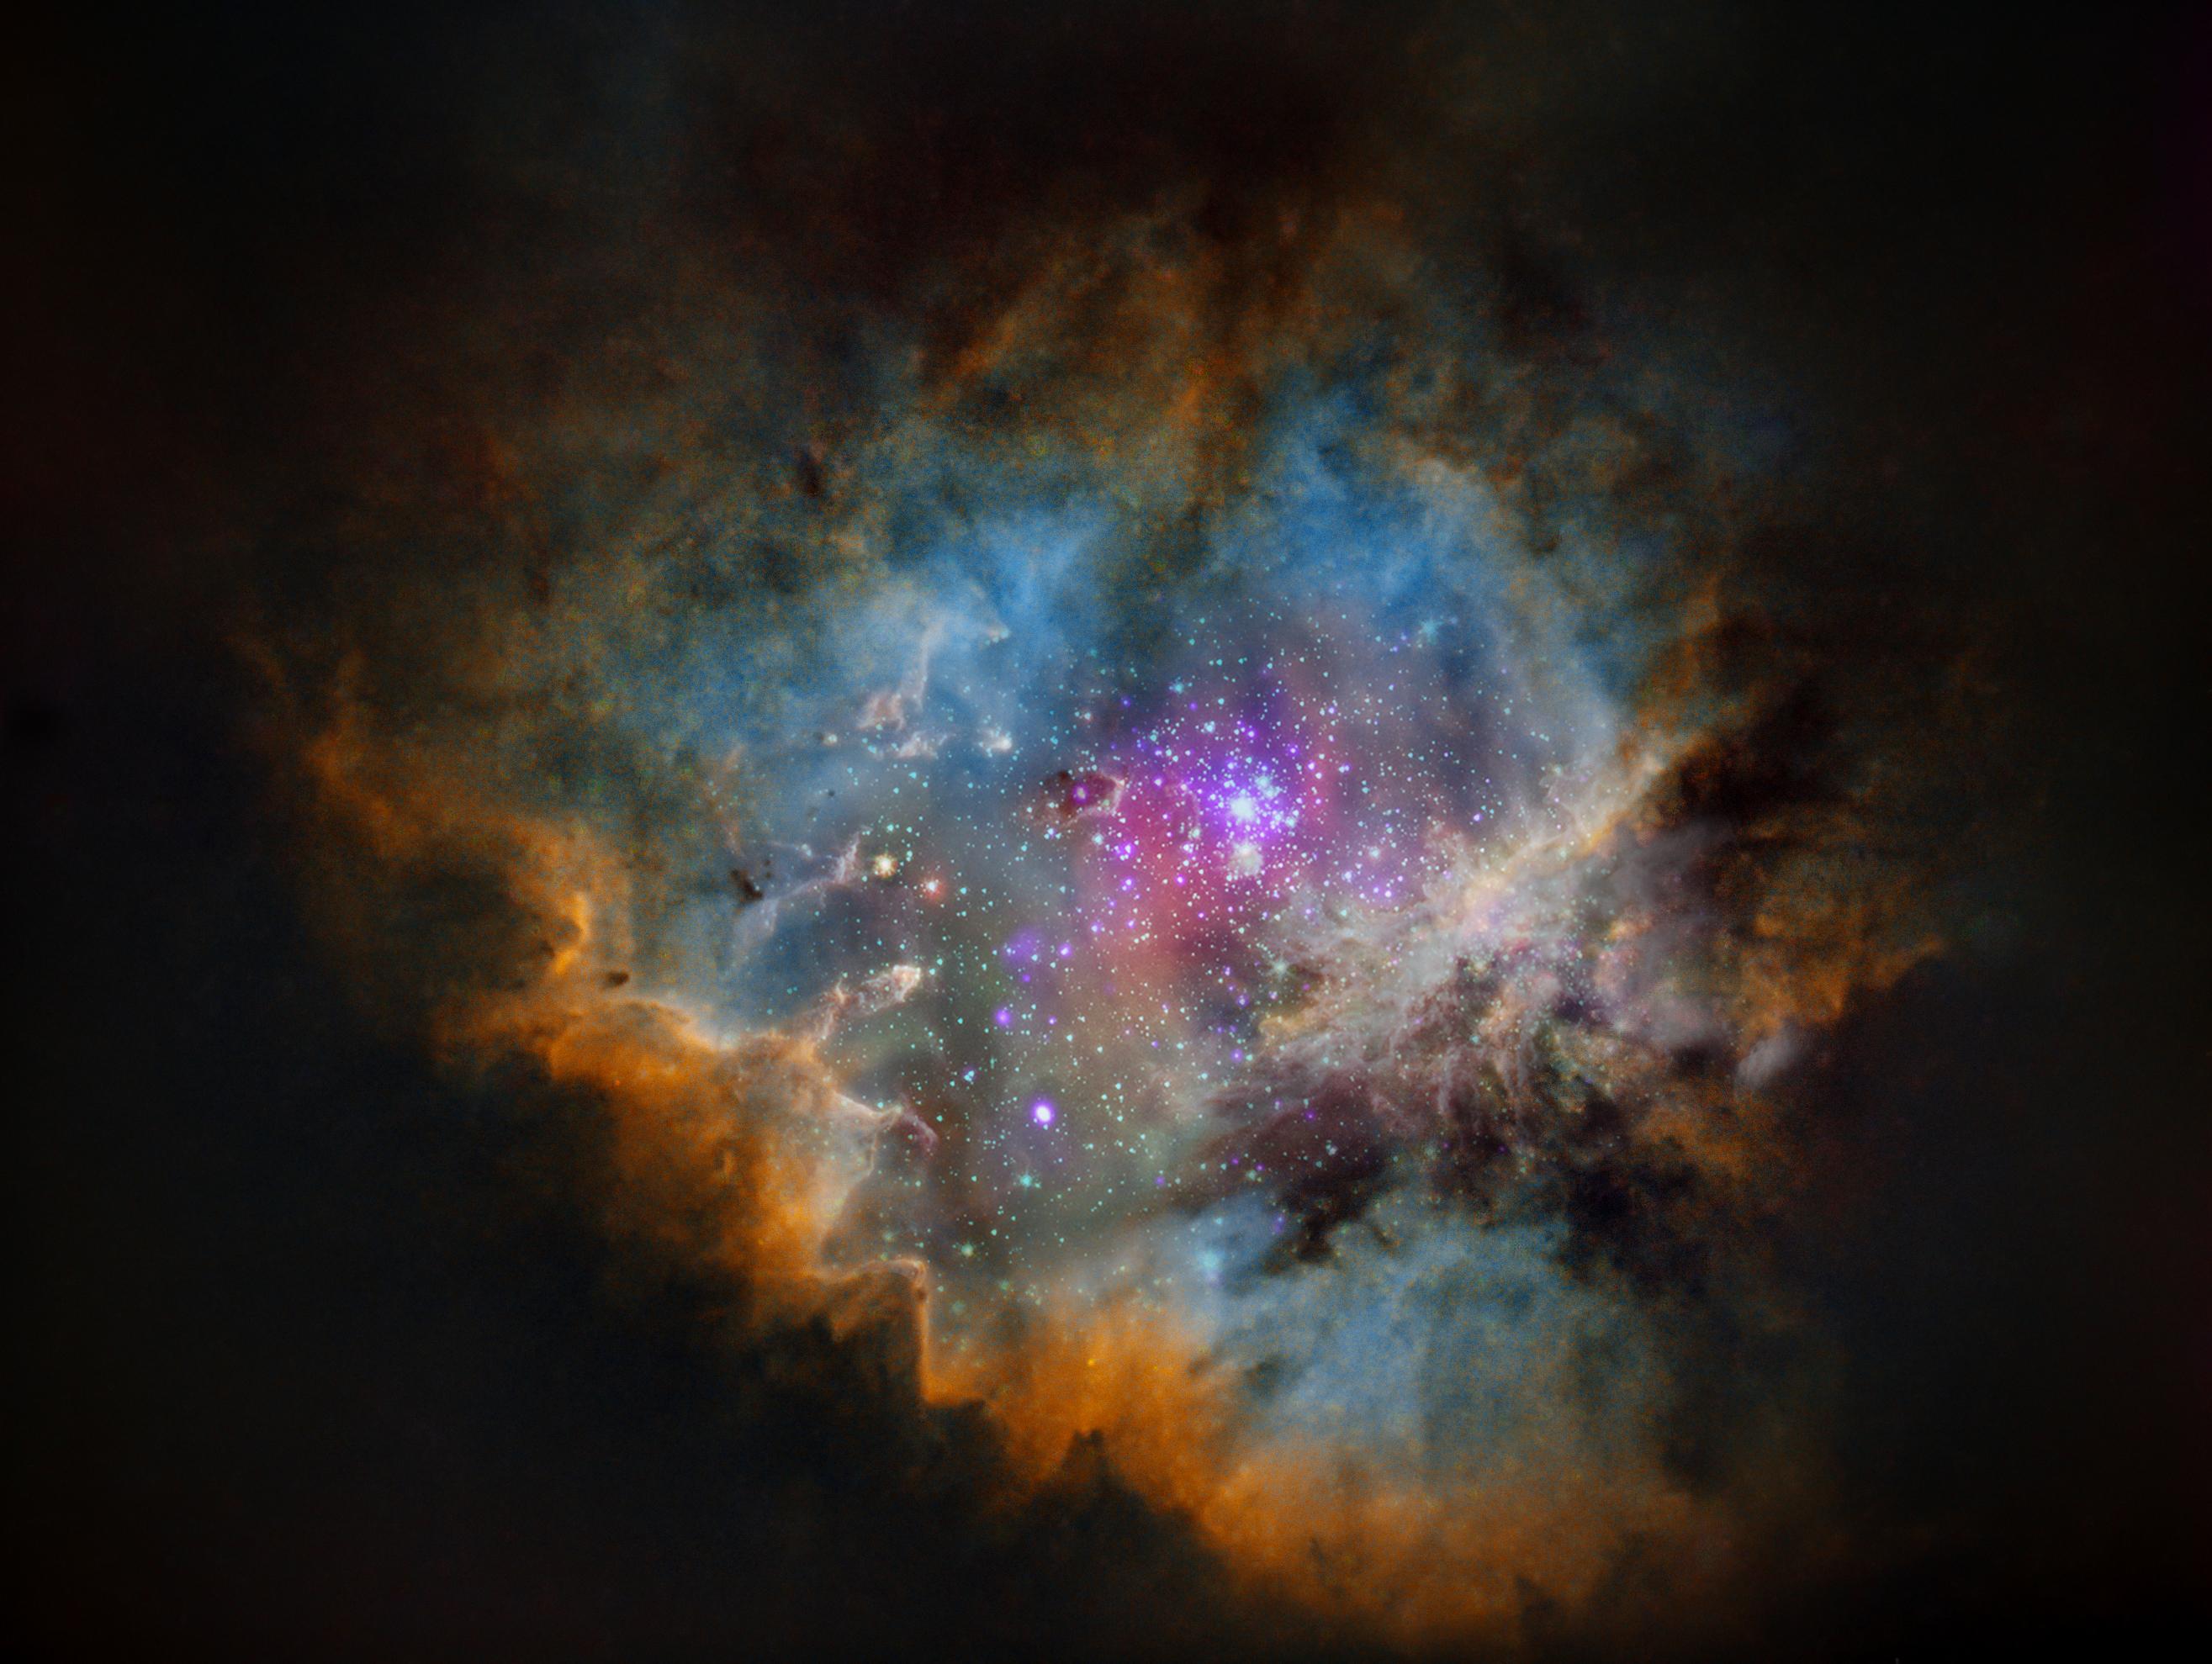 صورة معدلة رقمياً لسديم إن‌جي‌سي 281 الذي يتخذ شكل پاكمان والمحدد بسحب وأغبرة بألون بنية في الخارج فزرقاء، وفي مركزه تلمع نجوم العنقود النجمي آي‌سي 1590.